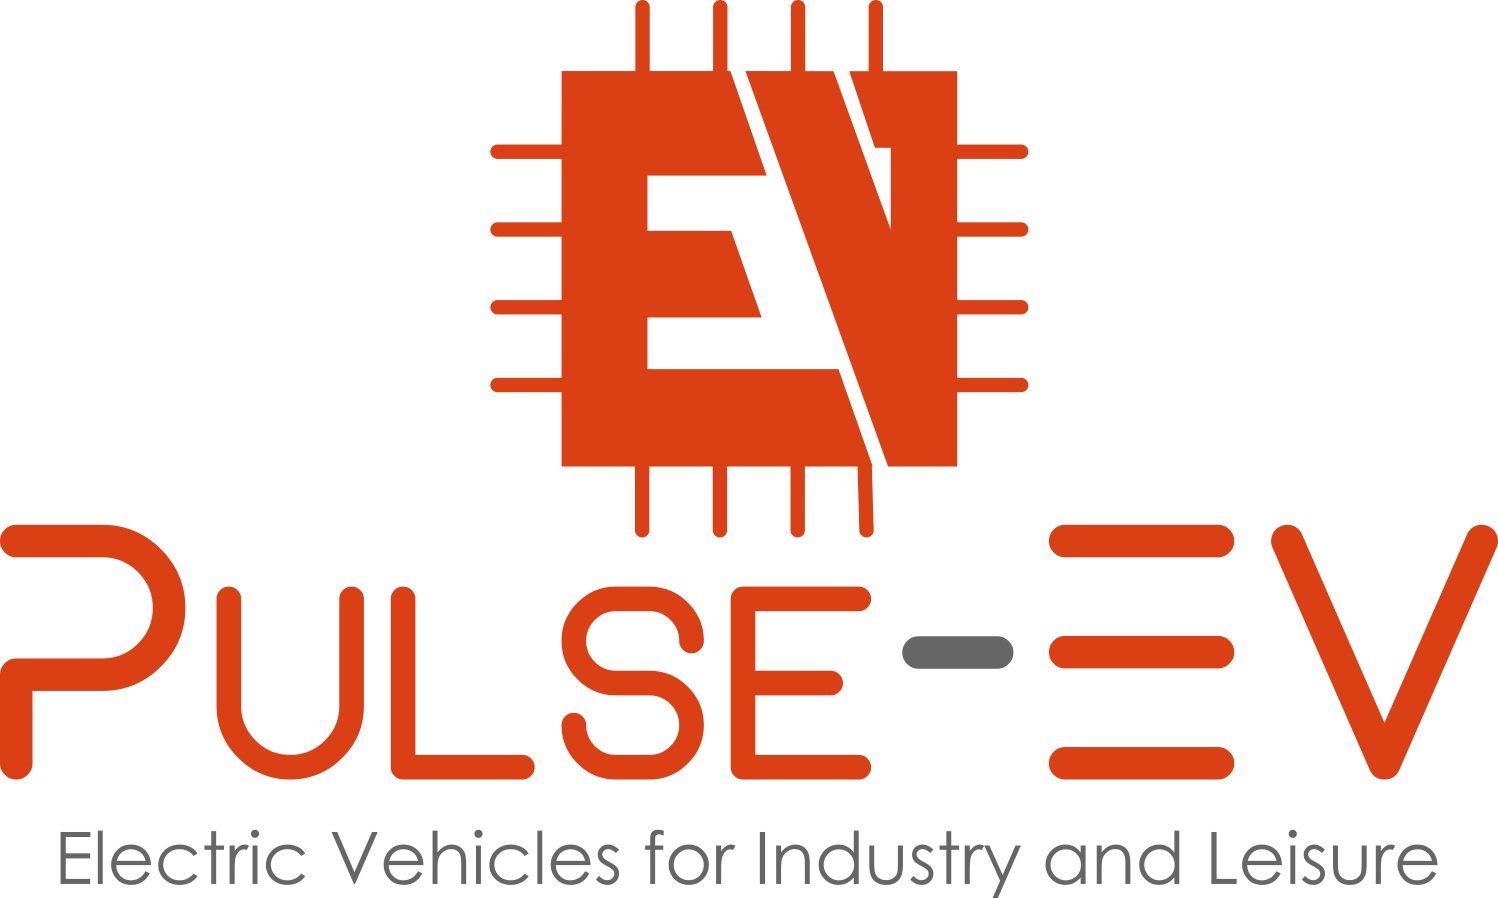 The Pulse-EV logo